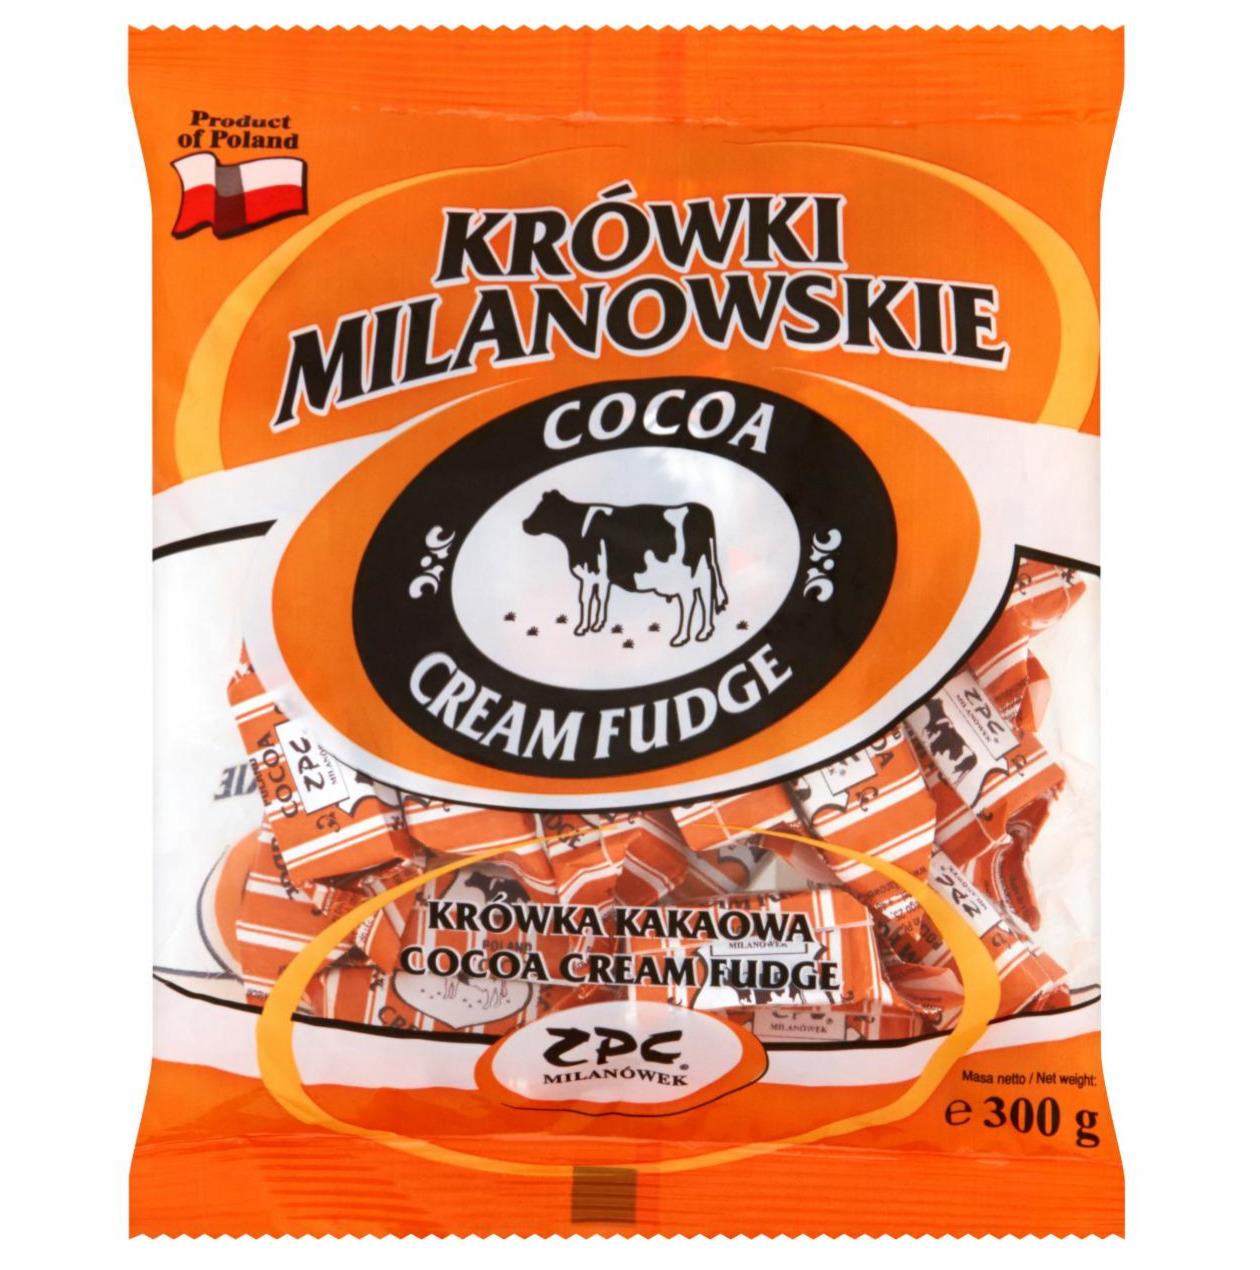 Zdjęcia - Krówki milanowskie kakaowe ZPC Milanówek